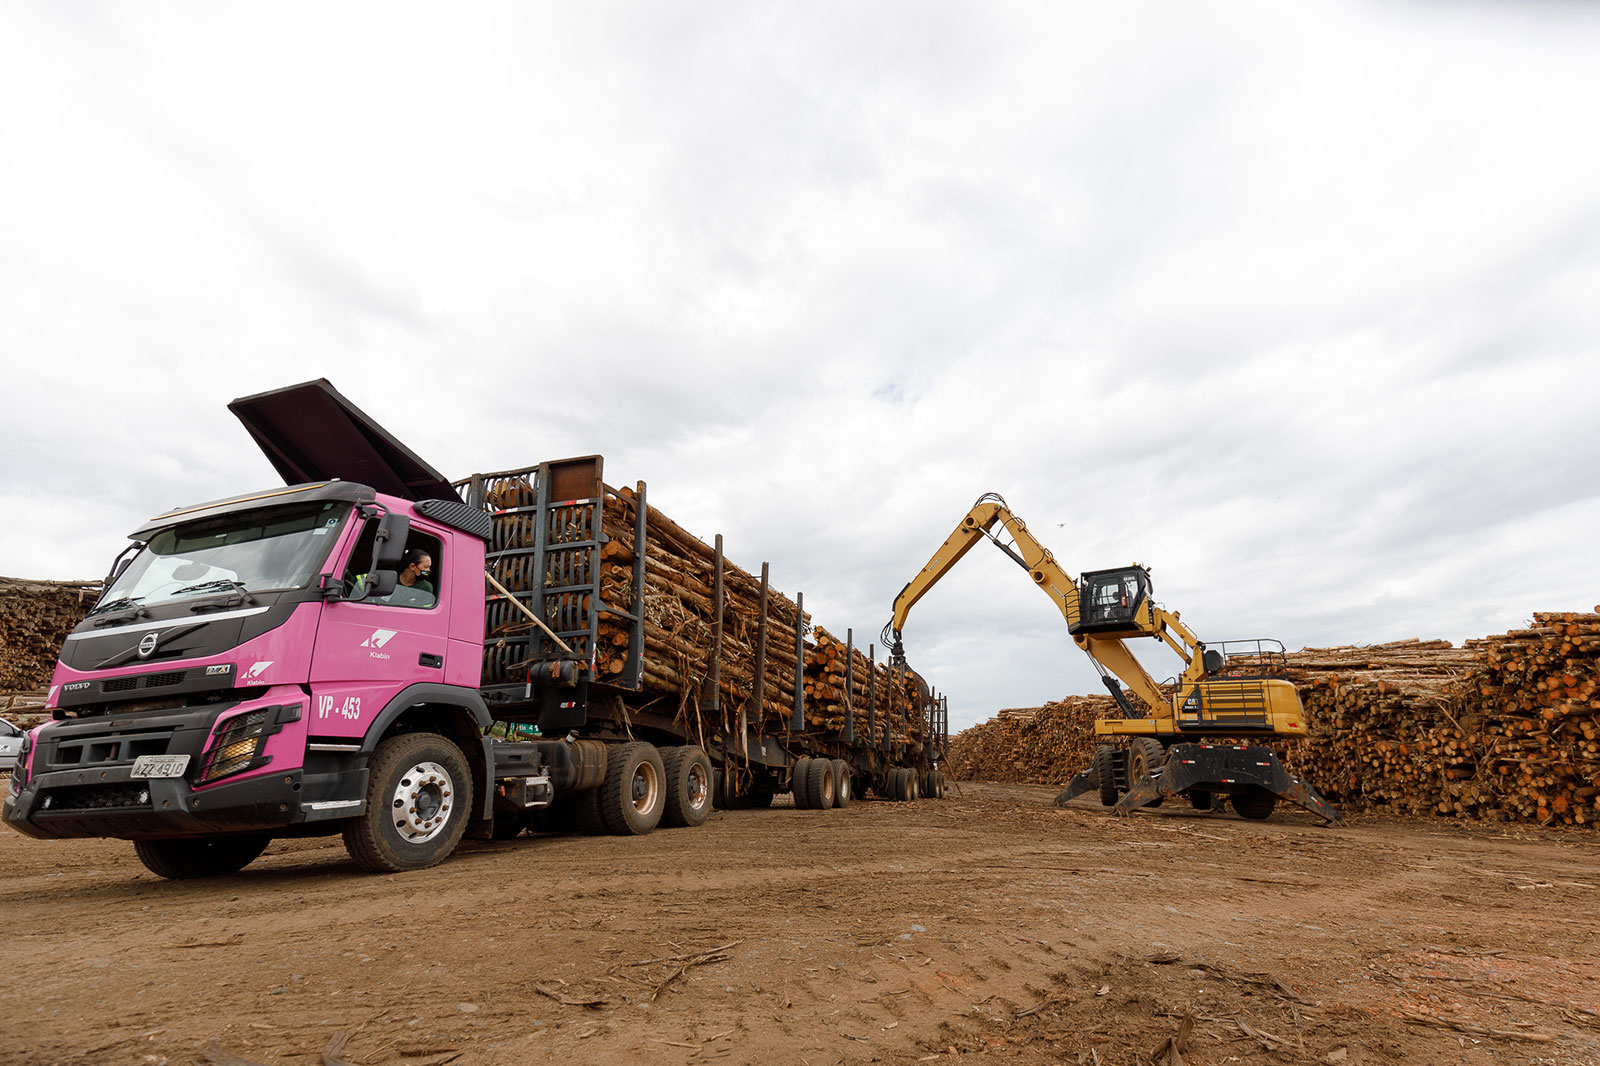 Na hora de entregar sua madeira para a Klabin o produtor pode escolher entre três alternativas pensadas para reduzir custos, ampliar negócios e melhorar sua logística